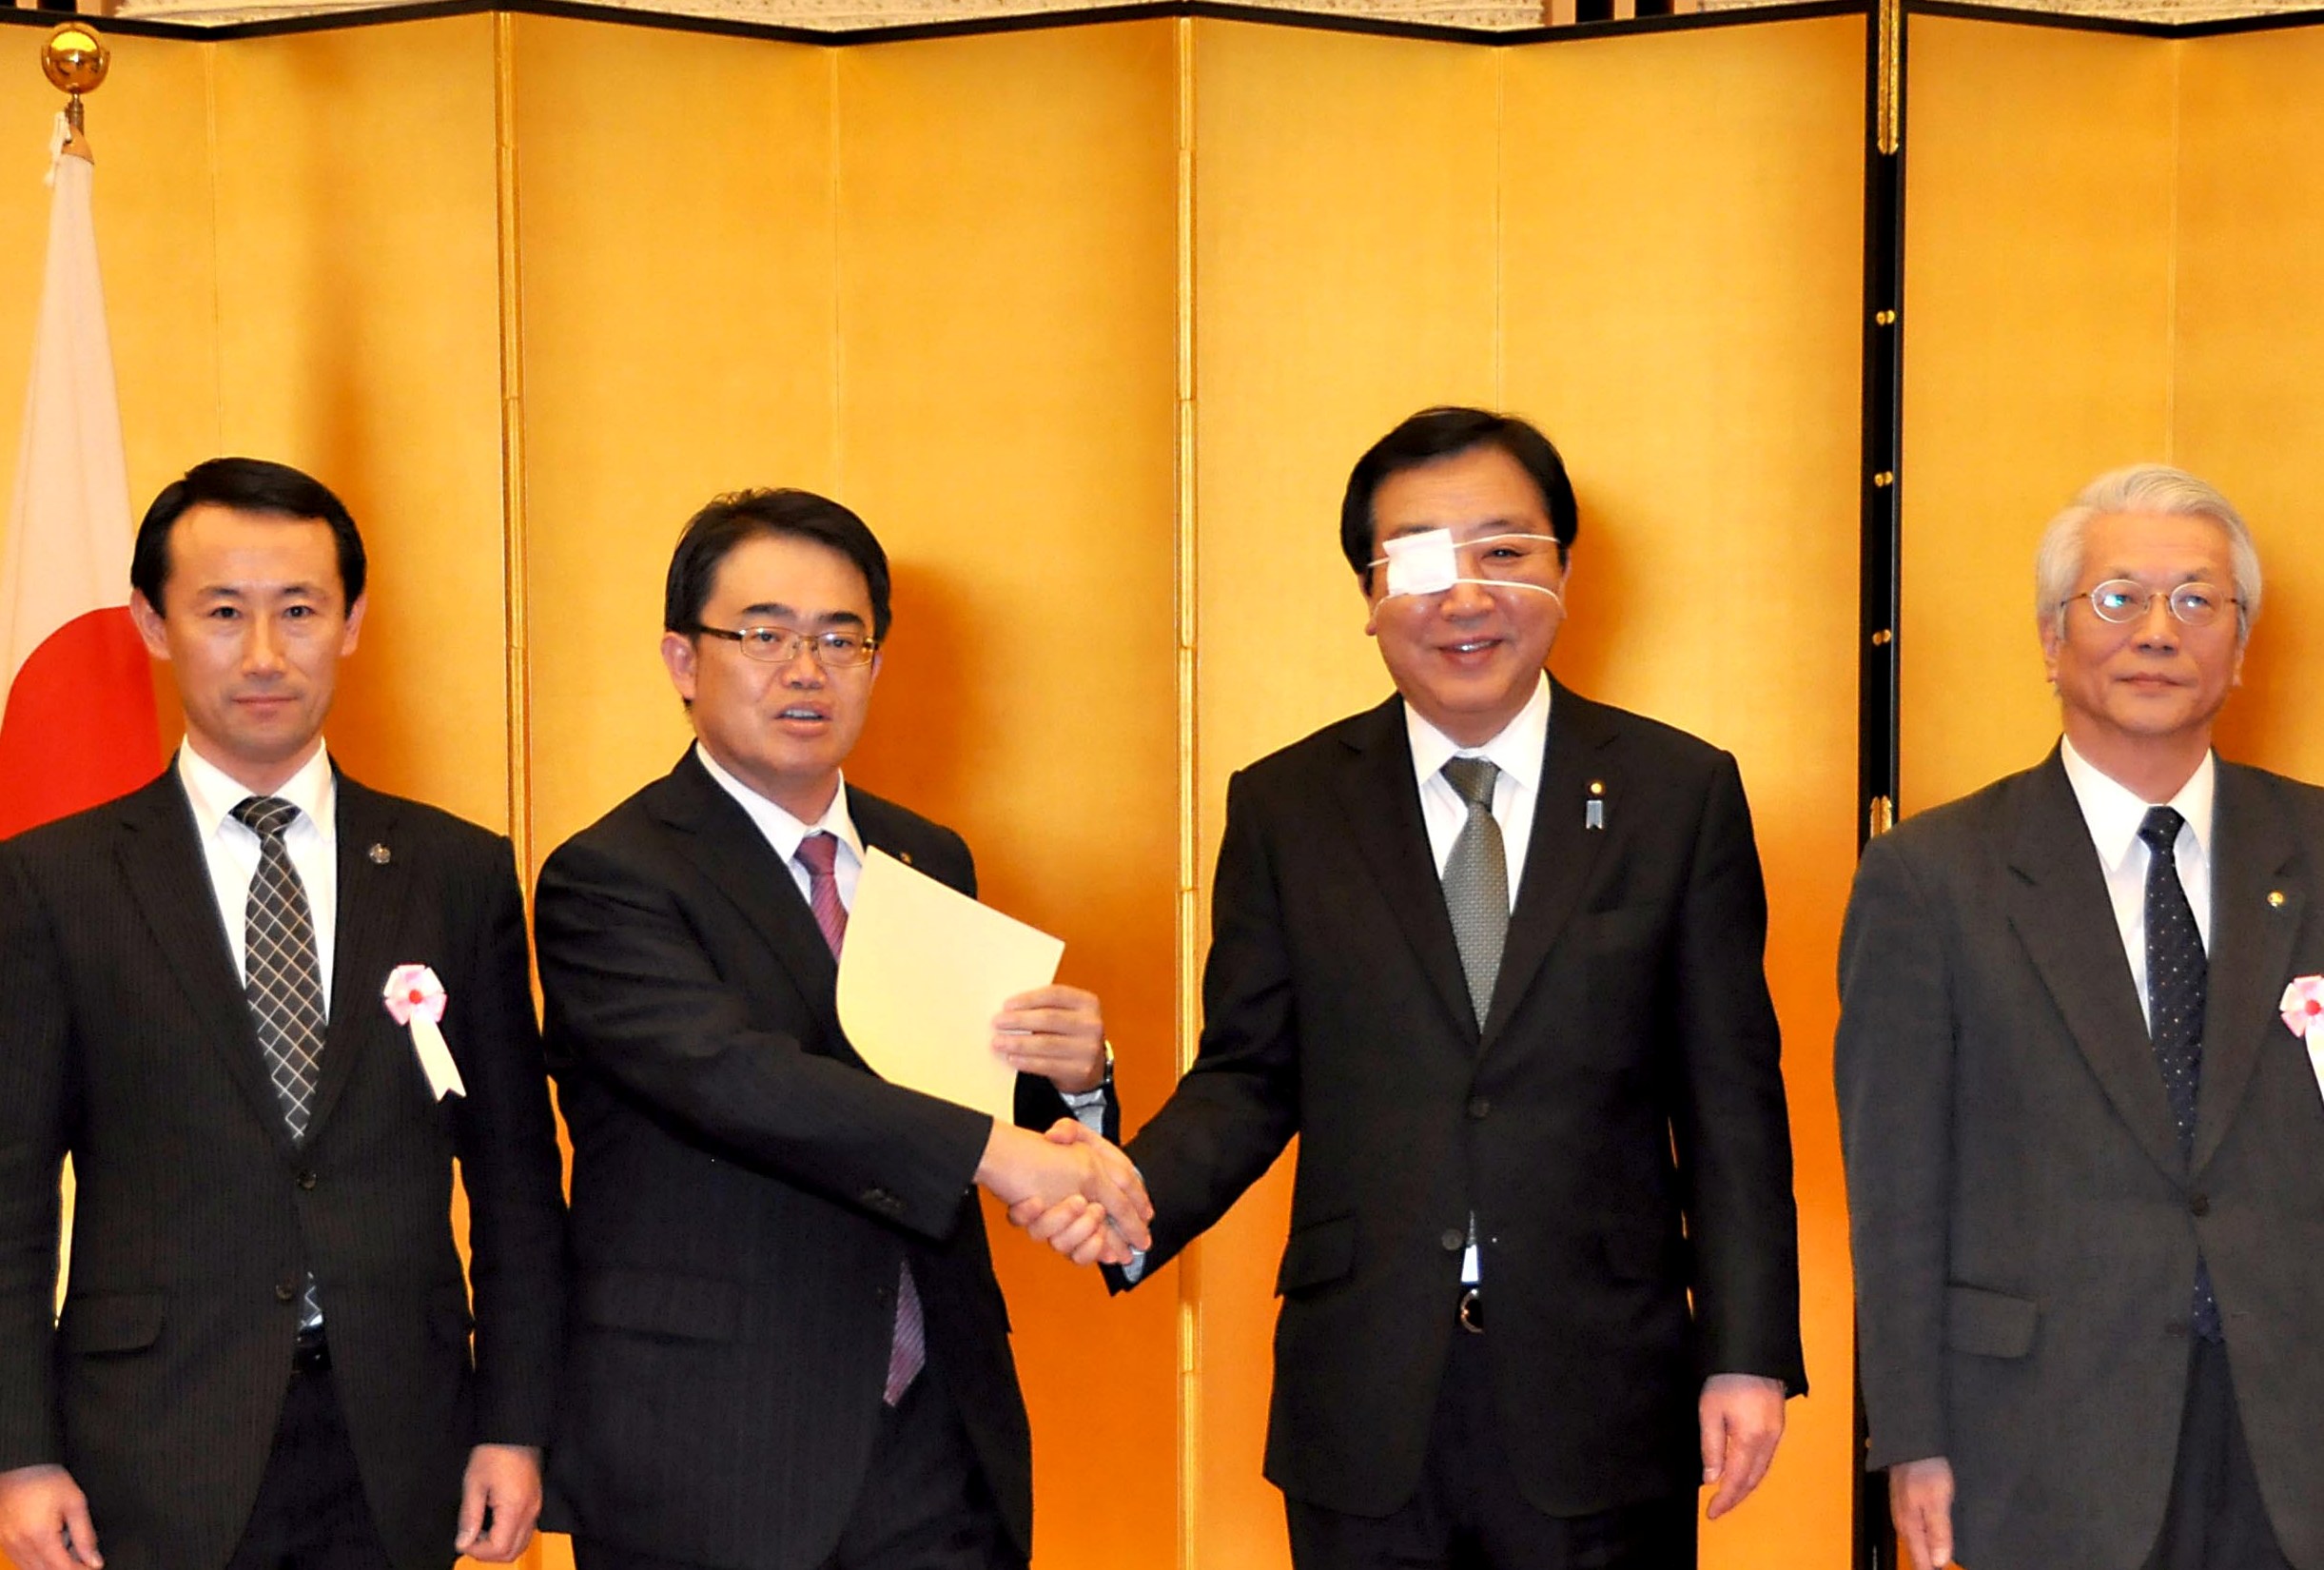 指定書の授与の後、野田首相と記念撮影をする大村知事